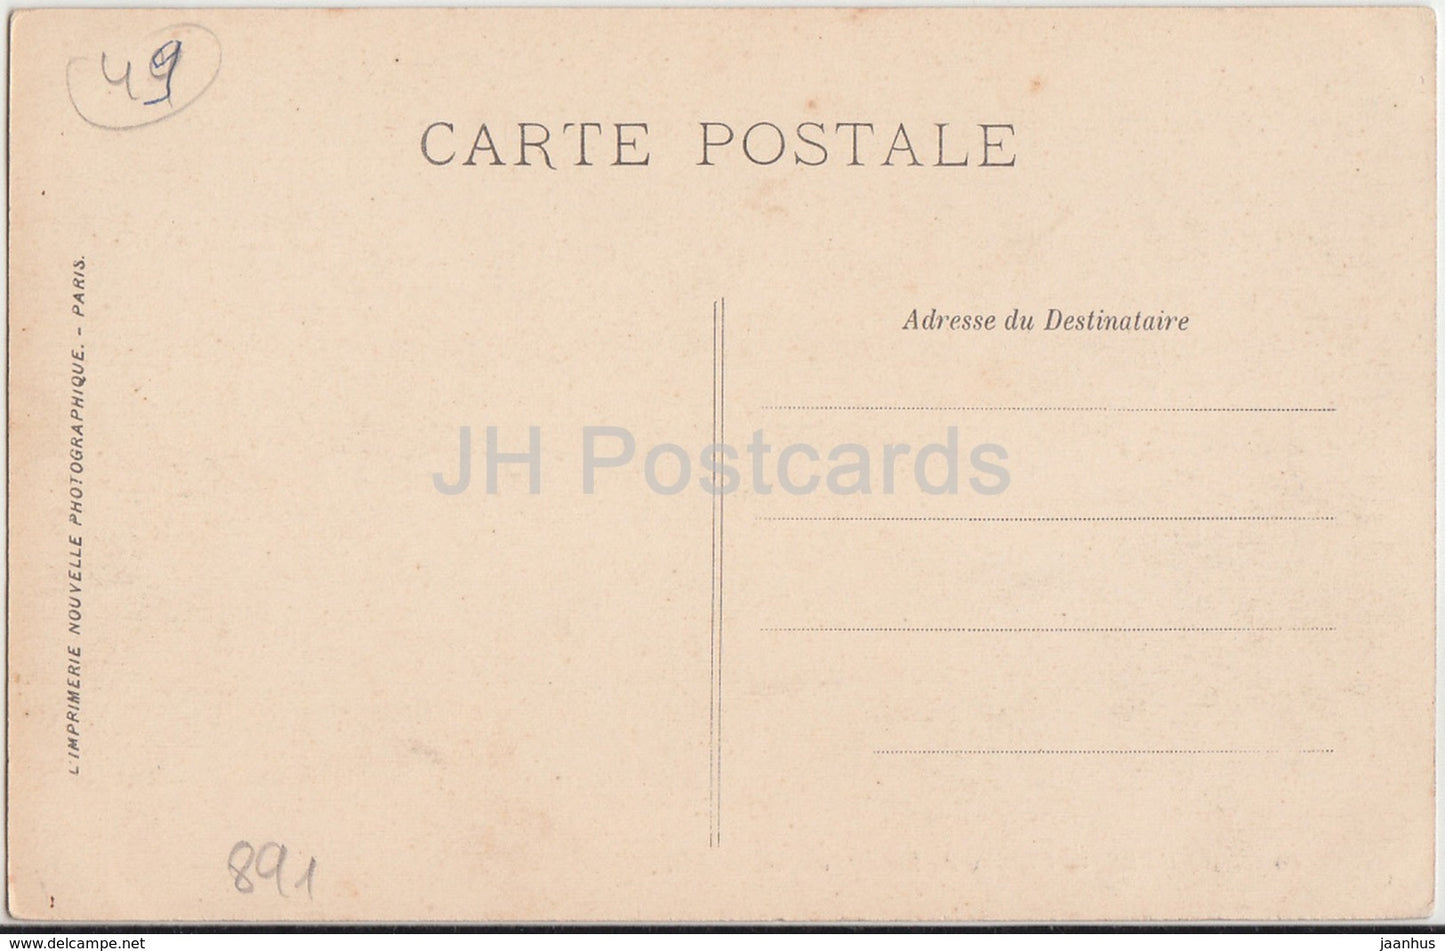 Angers - Chateau du Roi de Pologne - castle - 60 - old postcard - France - unused